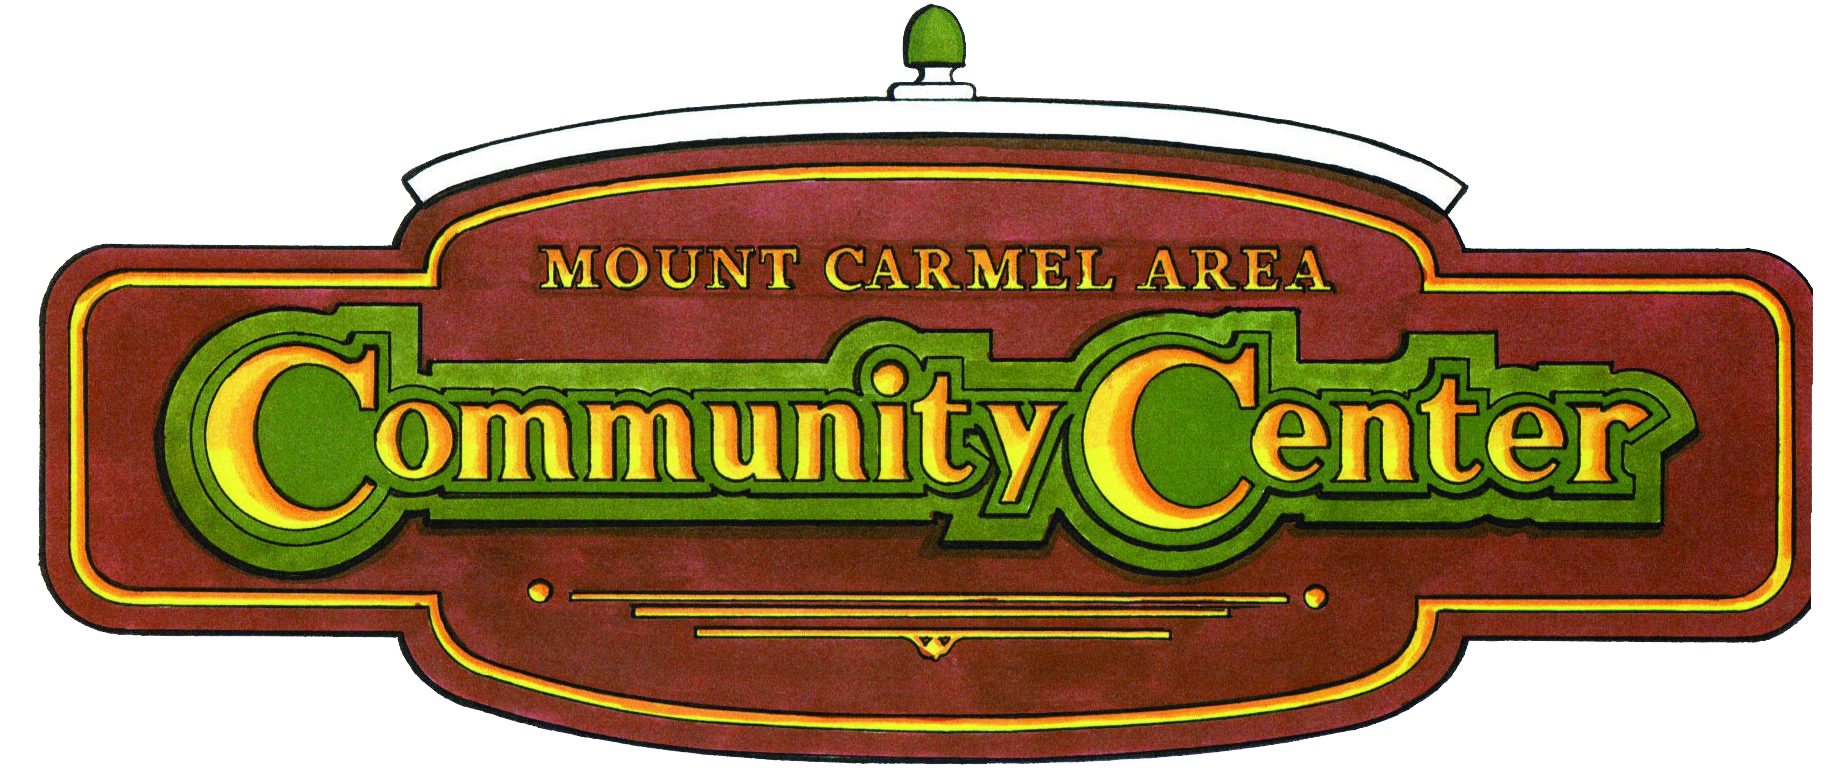 Mount Carmel Area Community Center